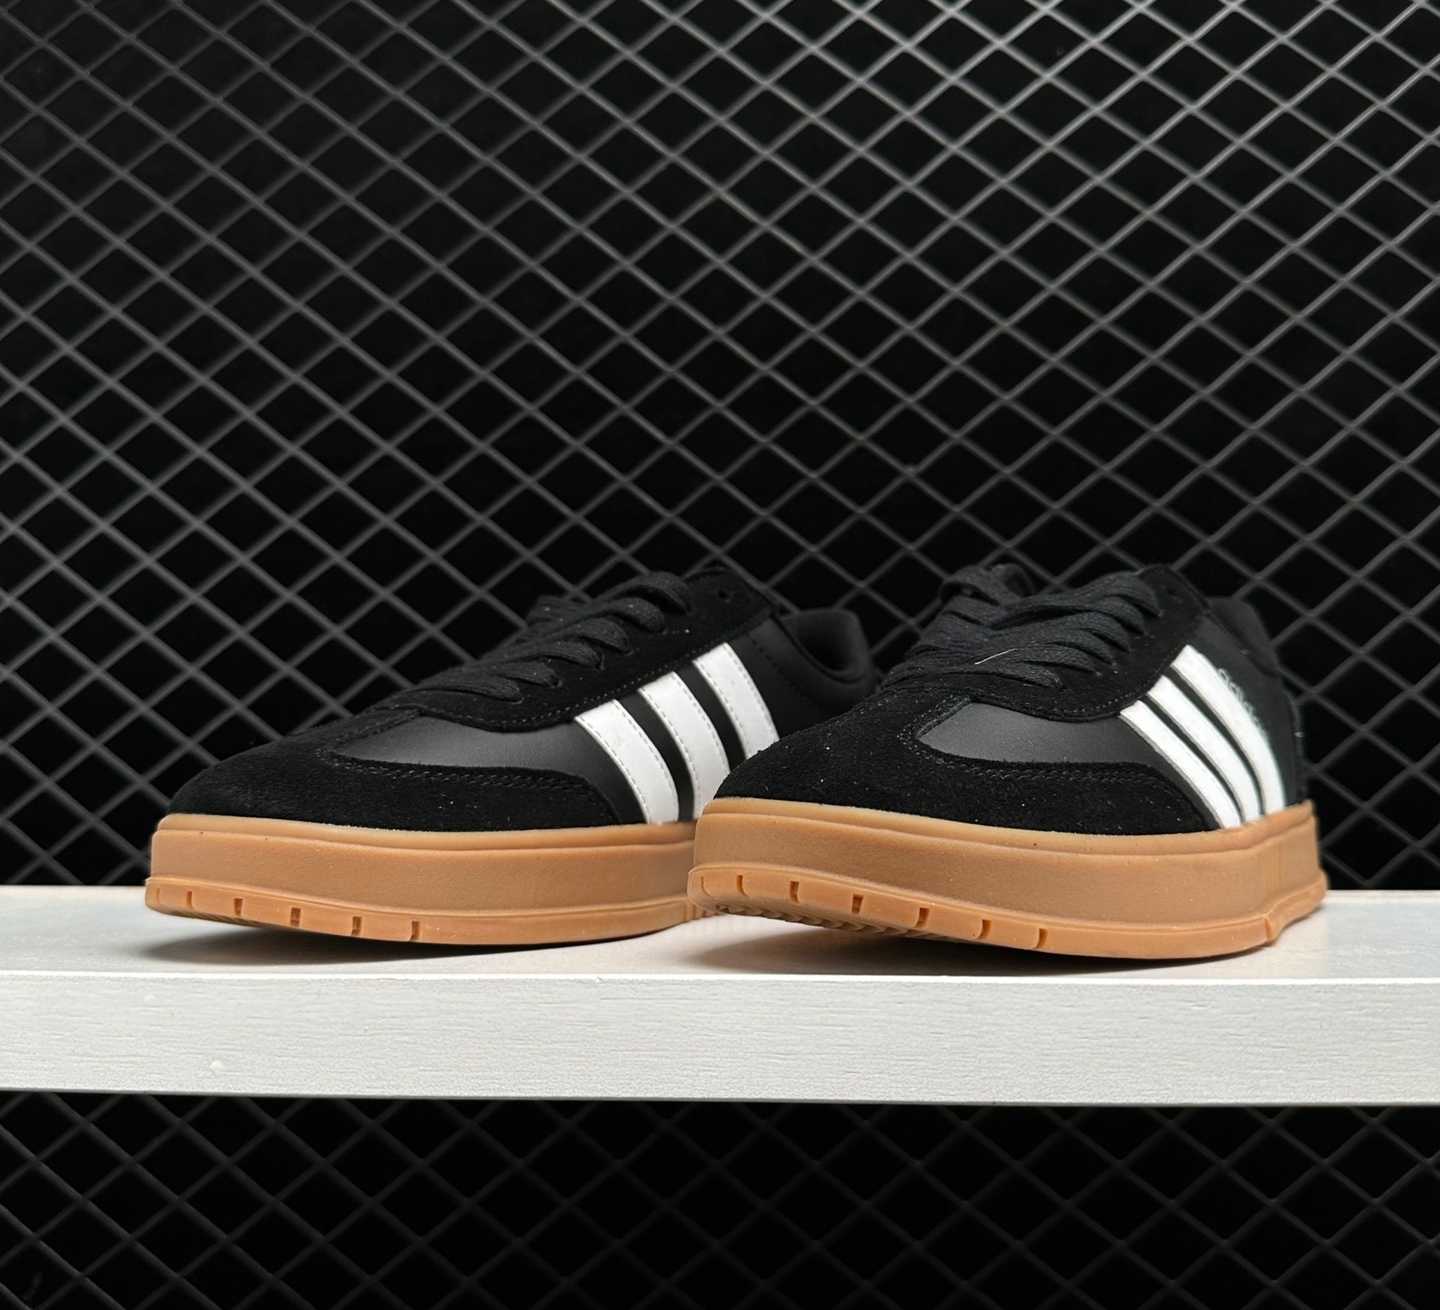 Adidas Neo Gradas 'Black White Brown' FX9305 - Stylish and Versatile Footwear